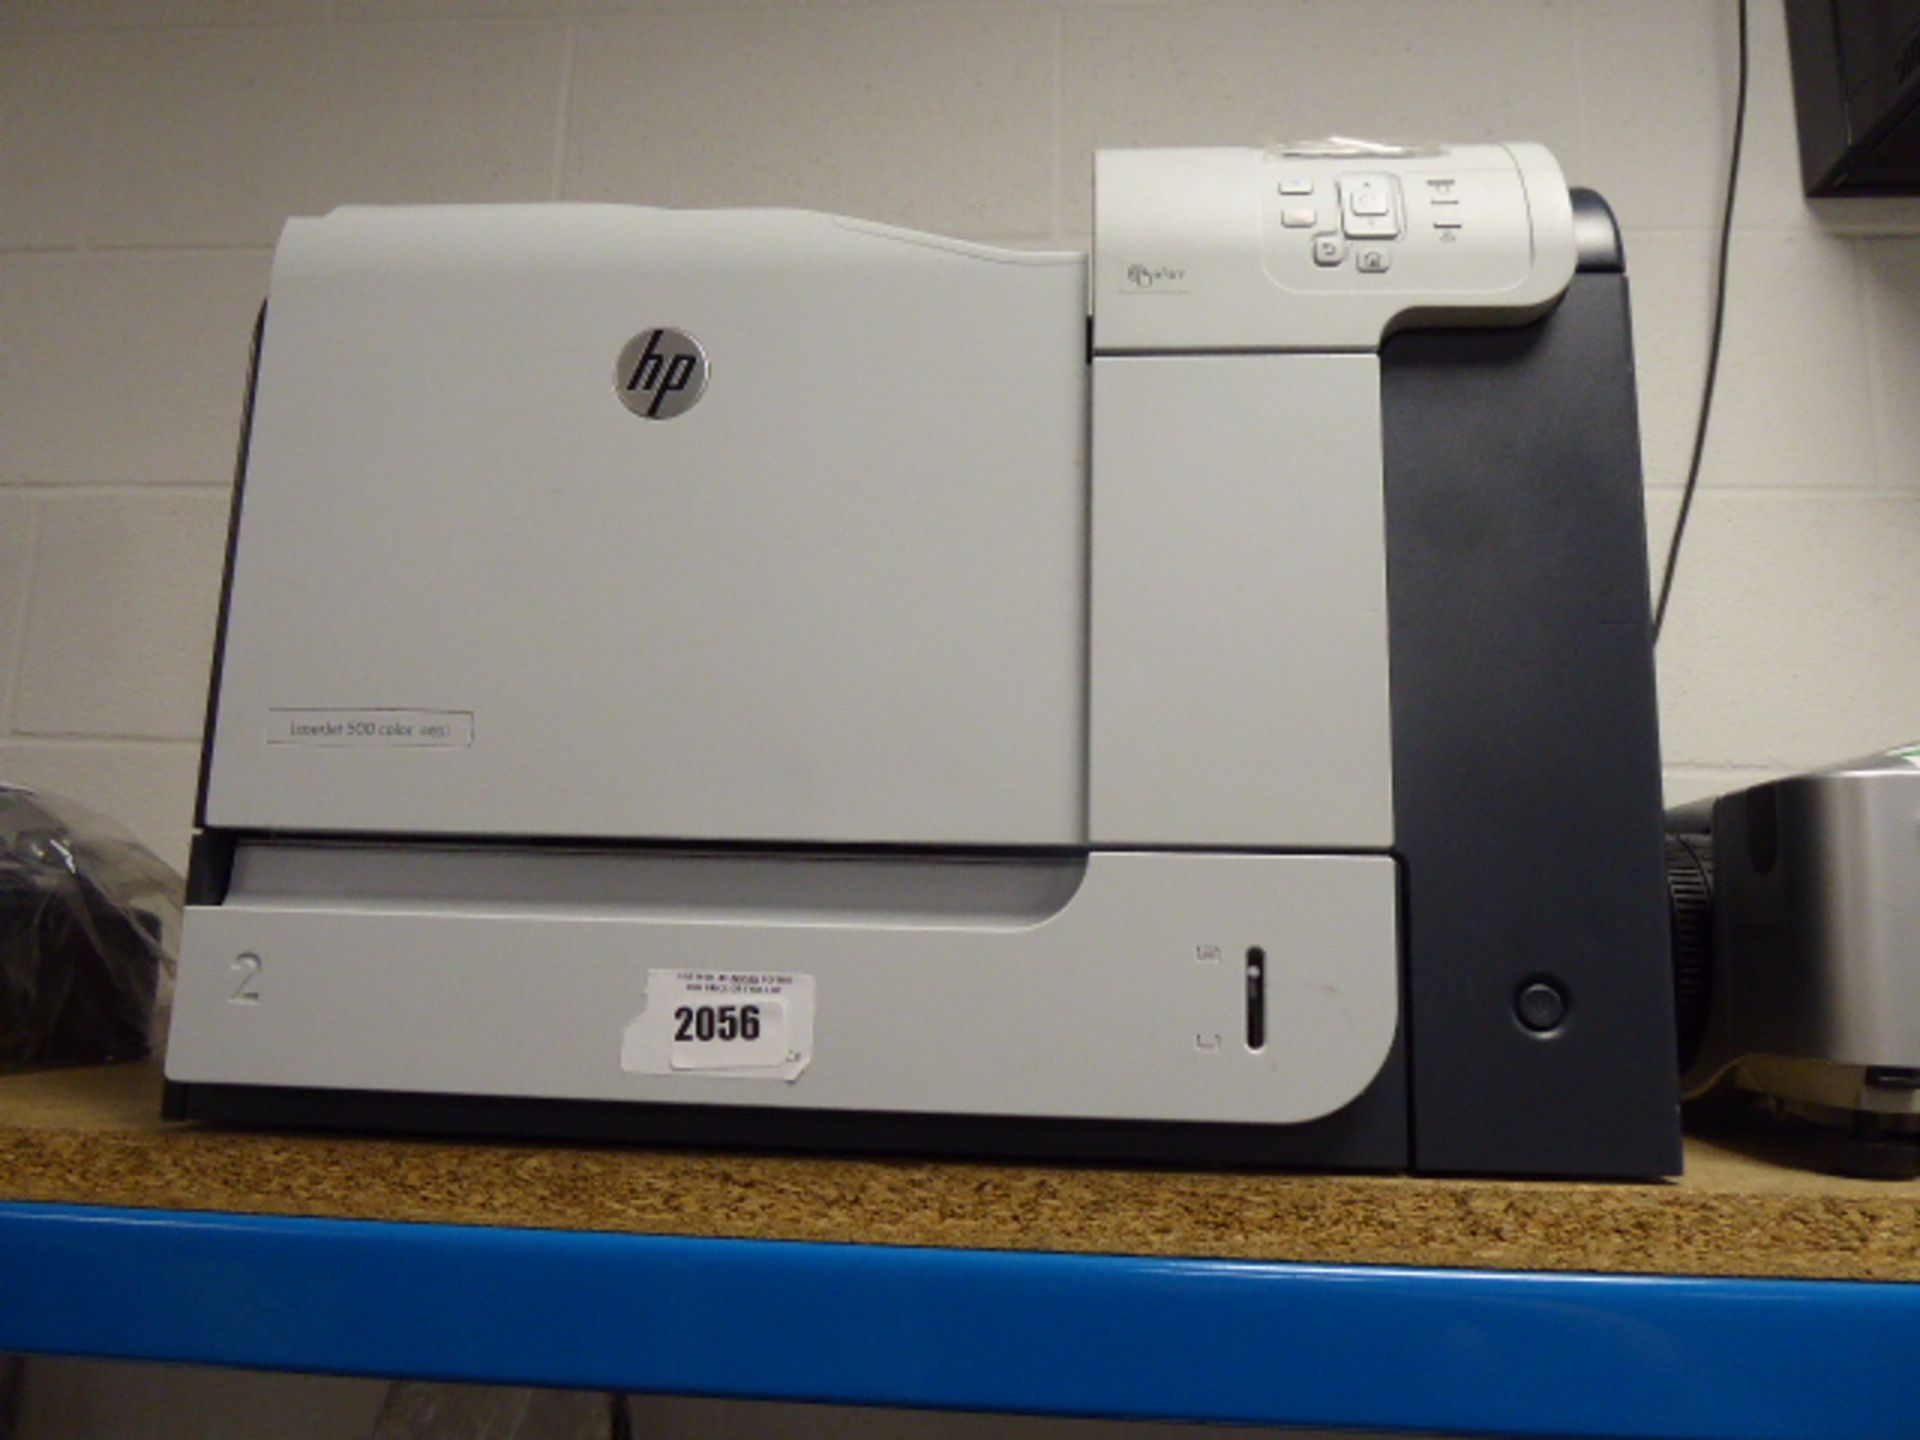 2051 HP laserjet 500 colour M551 printer